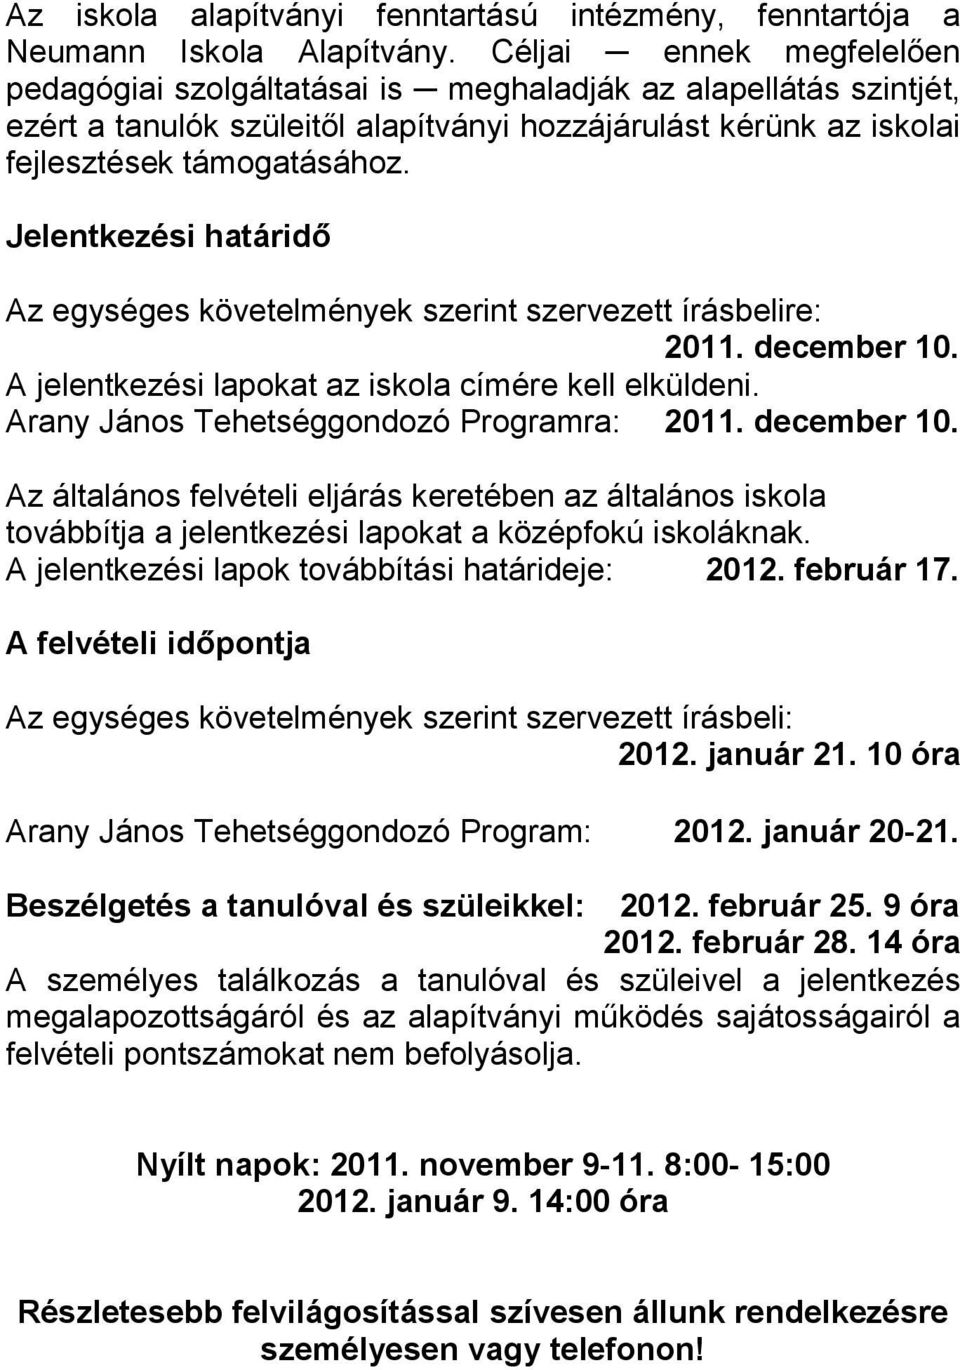 Jelentkezési határidő Az egységes követelmények szerint szervezett írásbelire: 2011. december 10. A jelentkezési lapokat az iskola címére kell elküldeni. Arany János Tehetséggondozó Programra: 2011.